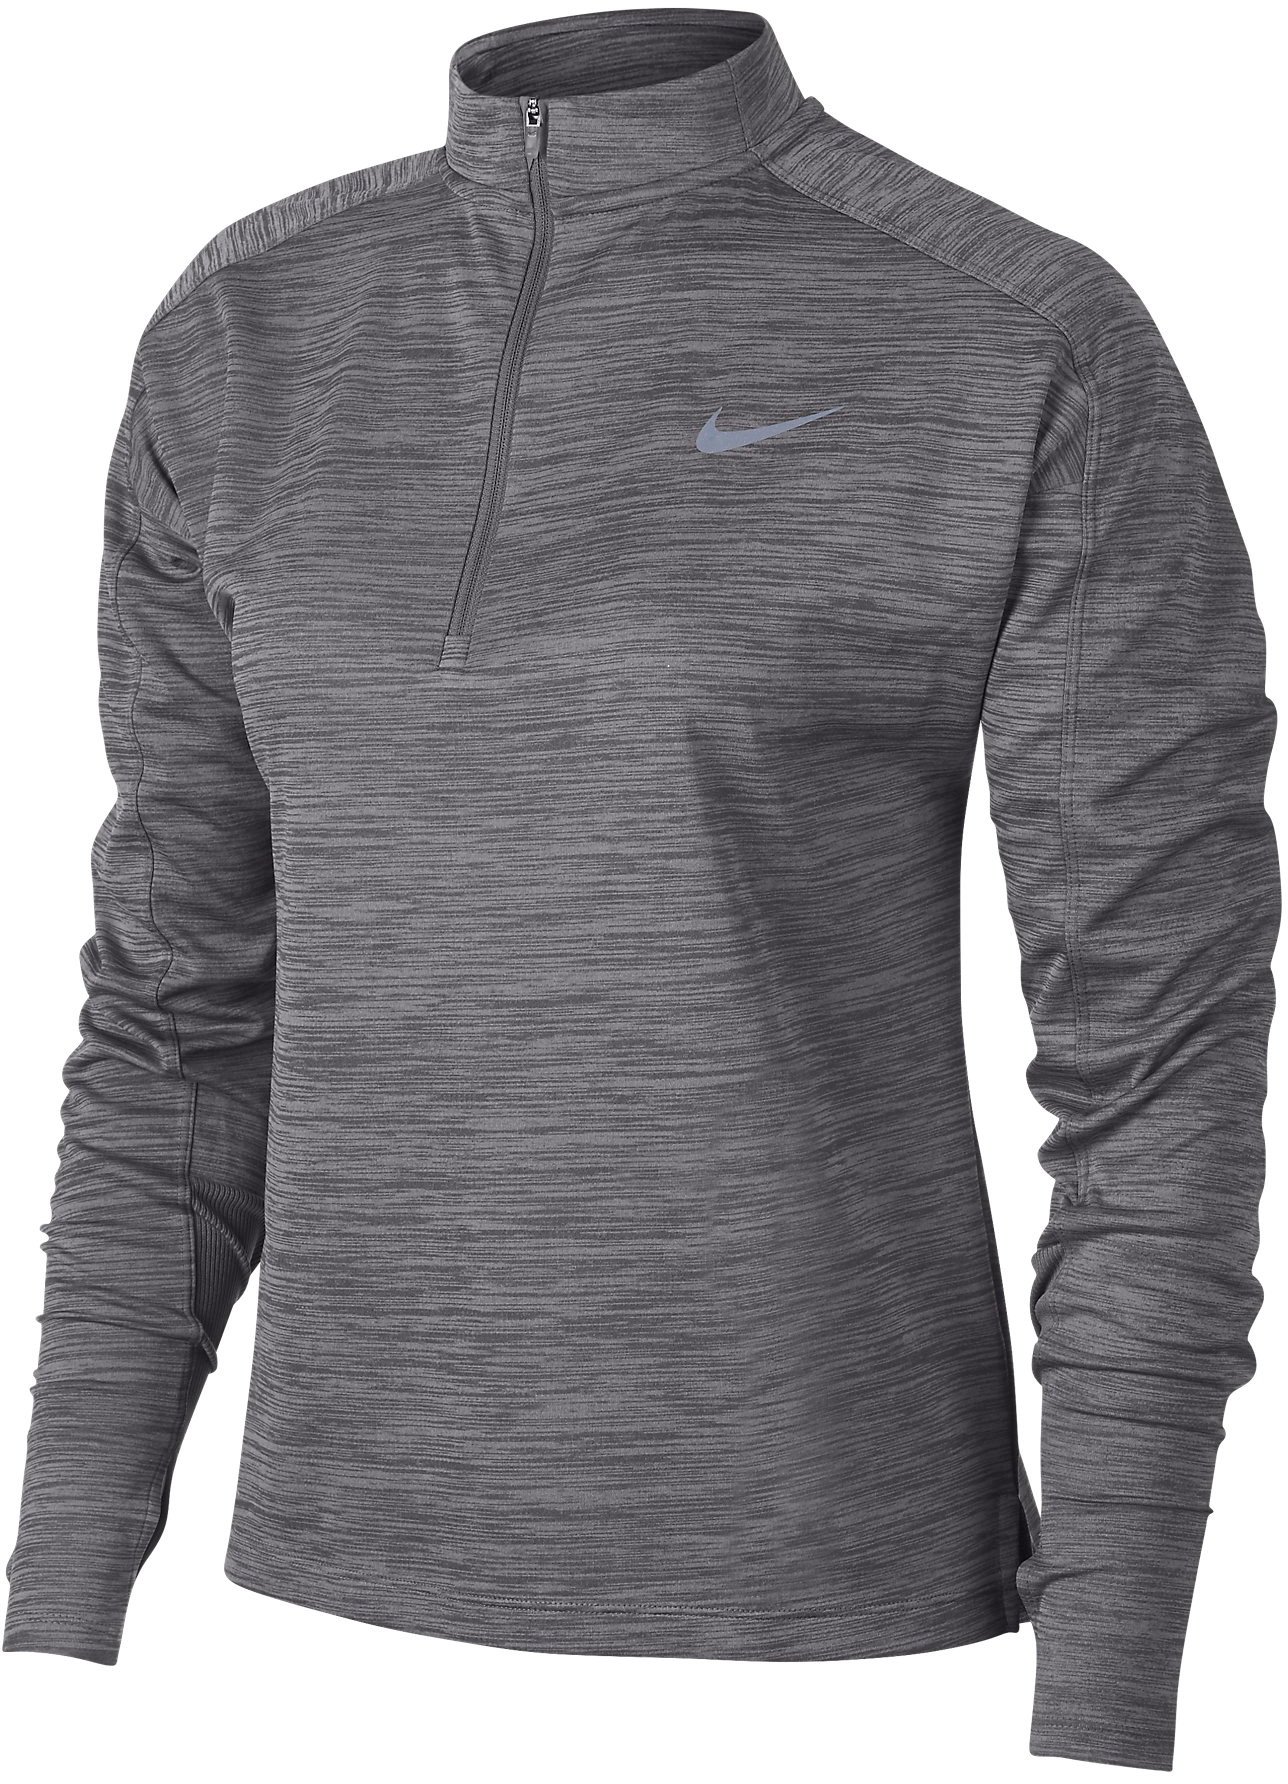 Dámské běžecké tričko s dlouhým rukávem Nike Pacer HZ